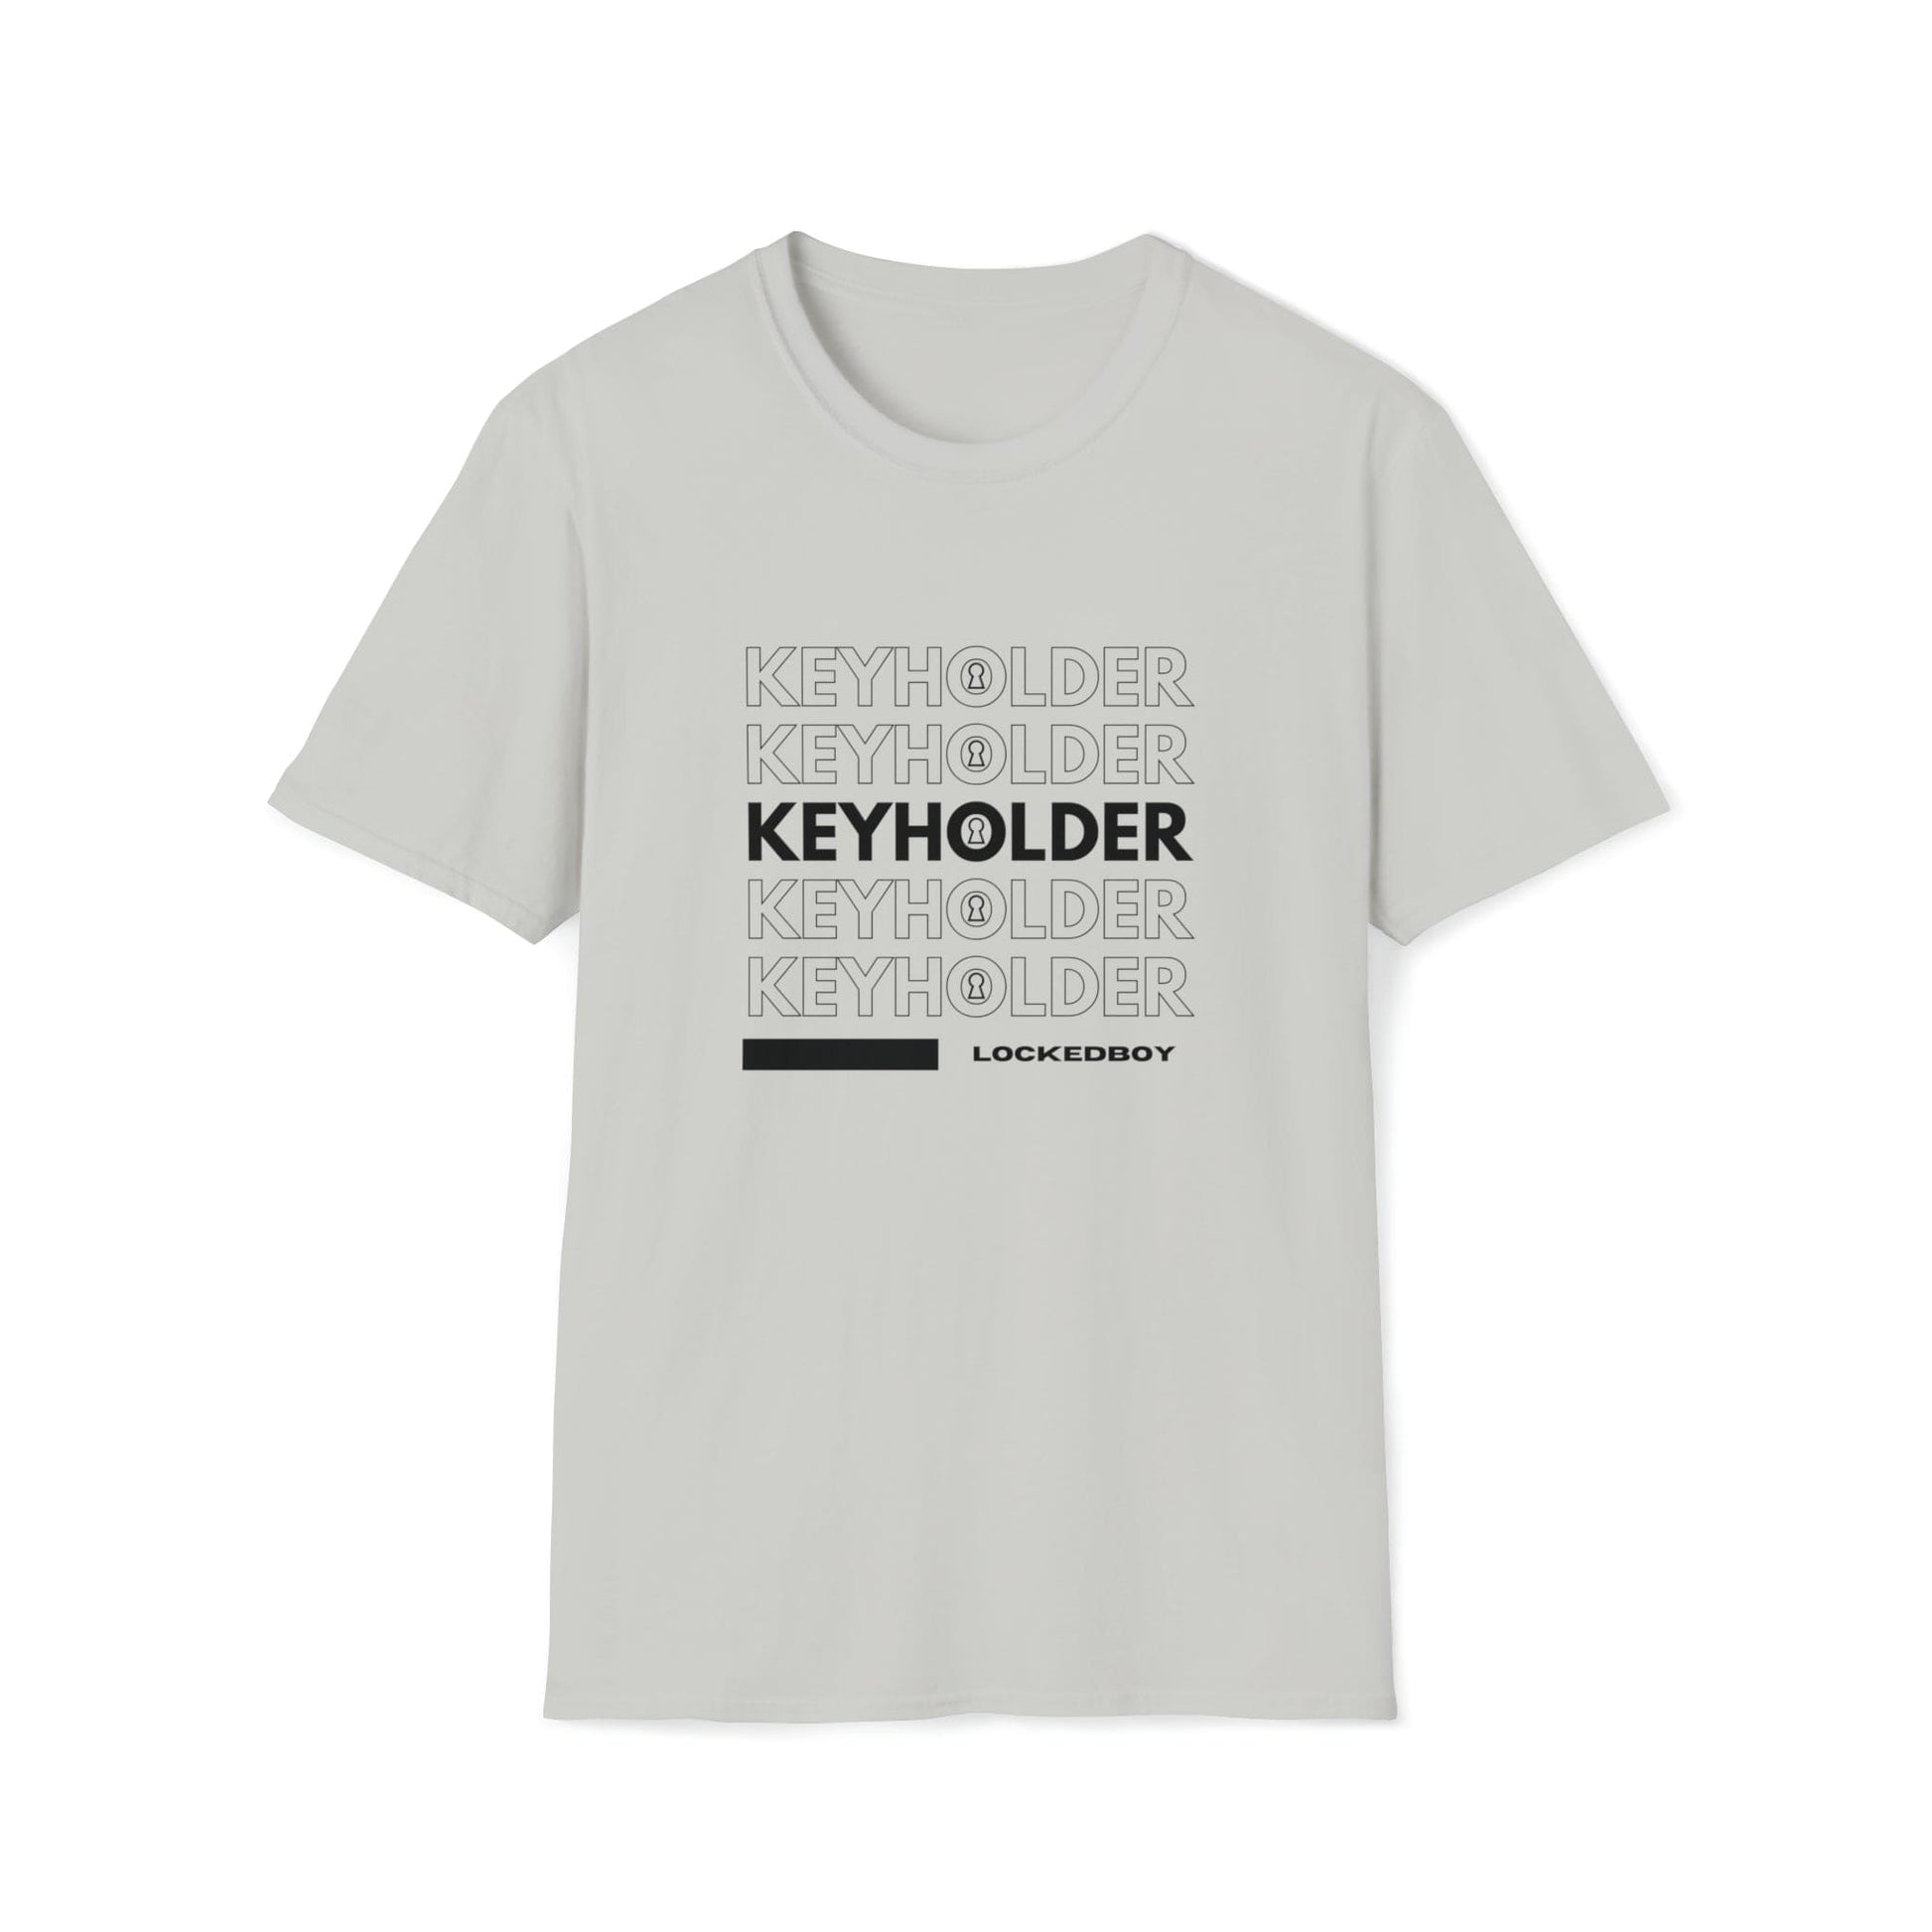 T-Shirt Ice Grey / S KEYHOLDER bag Inspo - Chastity Shirts by LockedBoy Athletics LEATHERDADDY BATOR